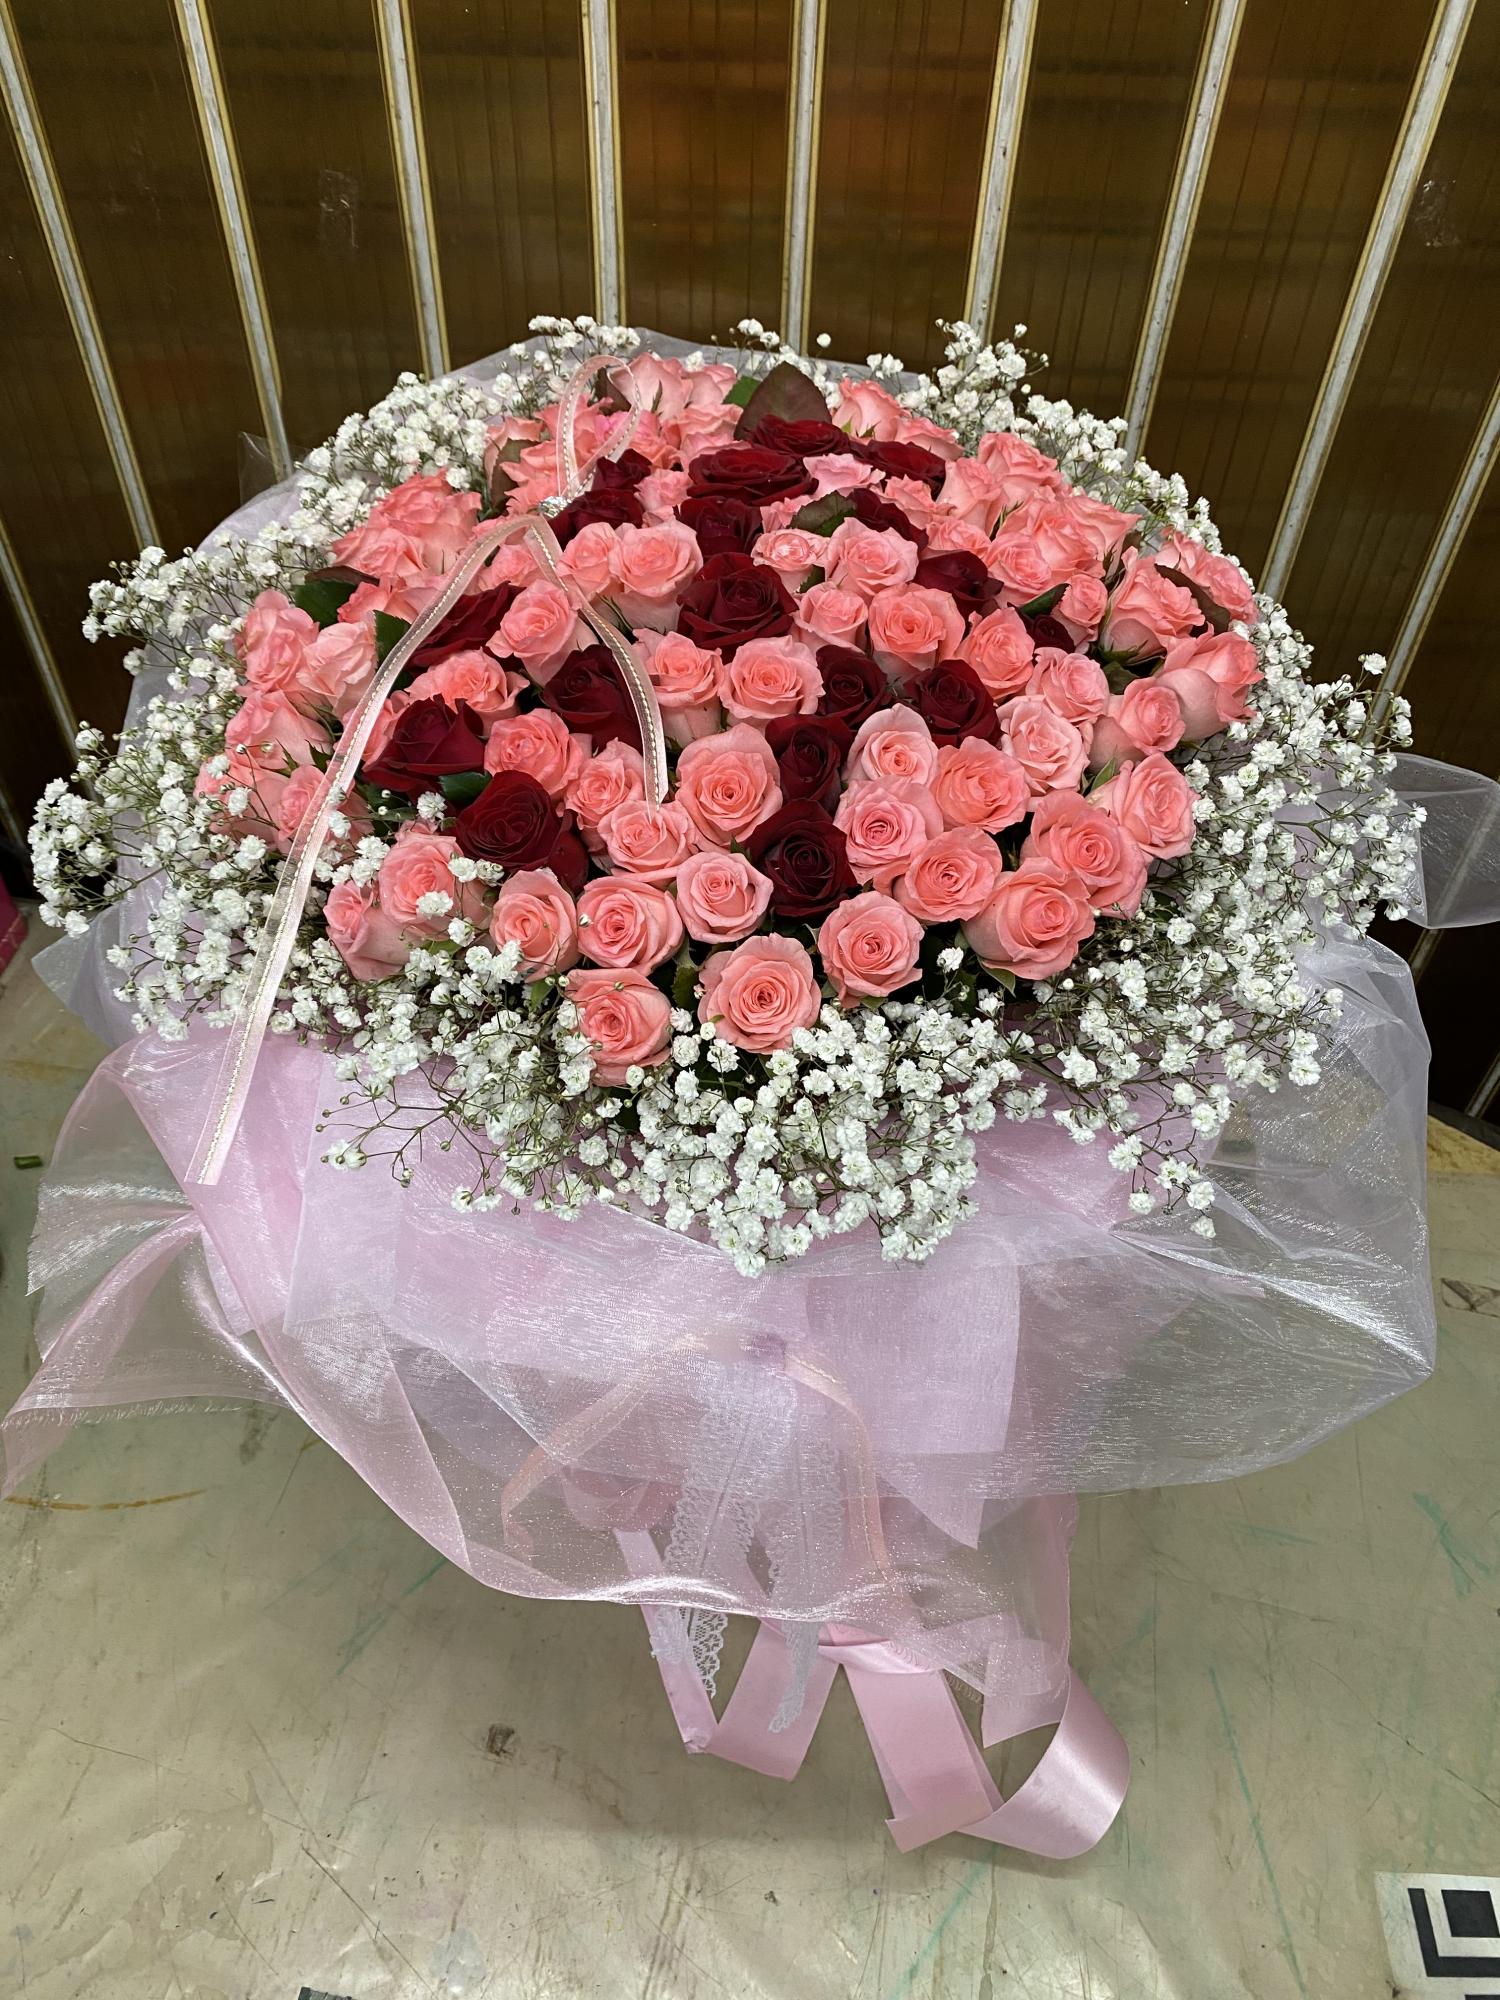 愛你粉久久/99朵玫瑰花束 – 喜樂創意設計花店